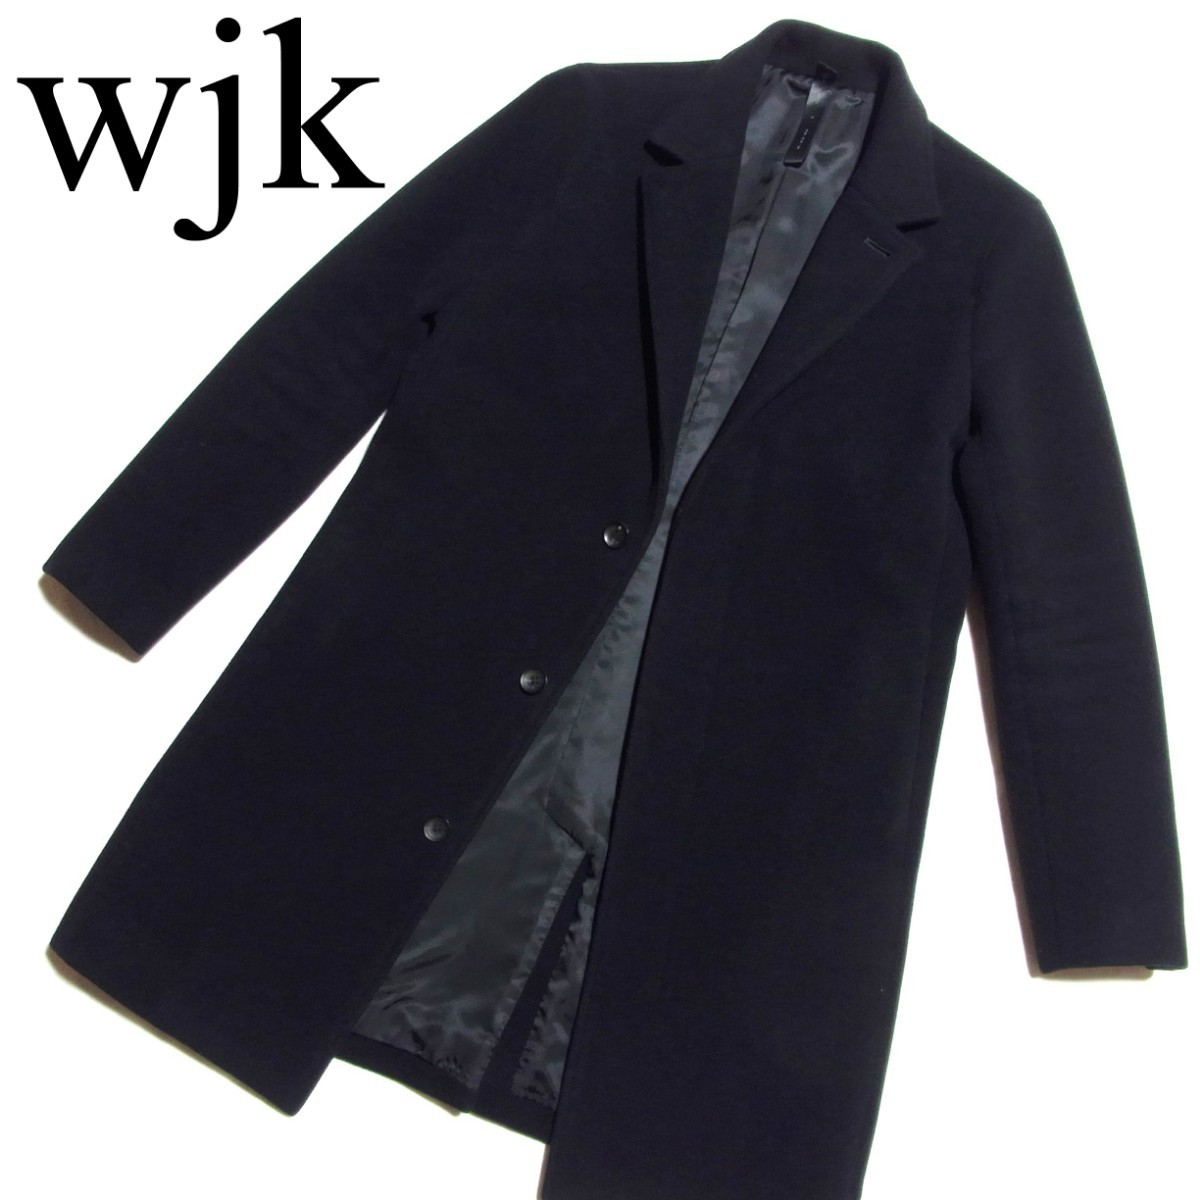 wjk fine wool chester メルトン チェスターコート S 黒 ブラック 1817 wl77h Yahoo!フリマ（旧）のサムネイル